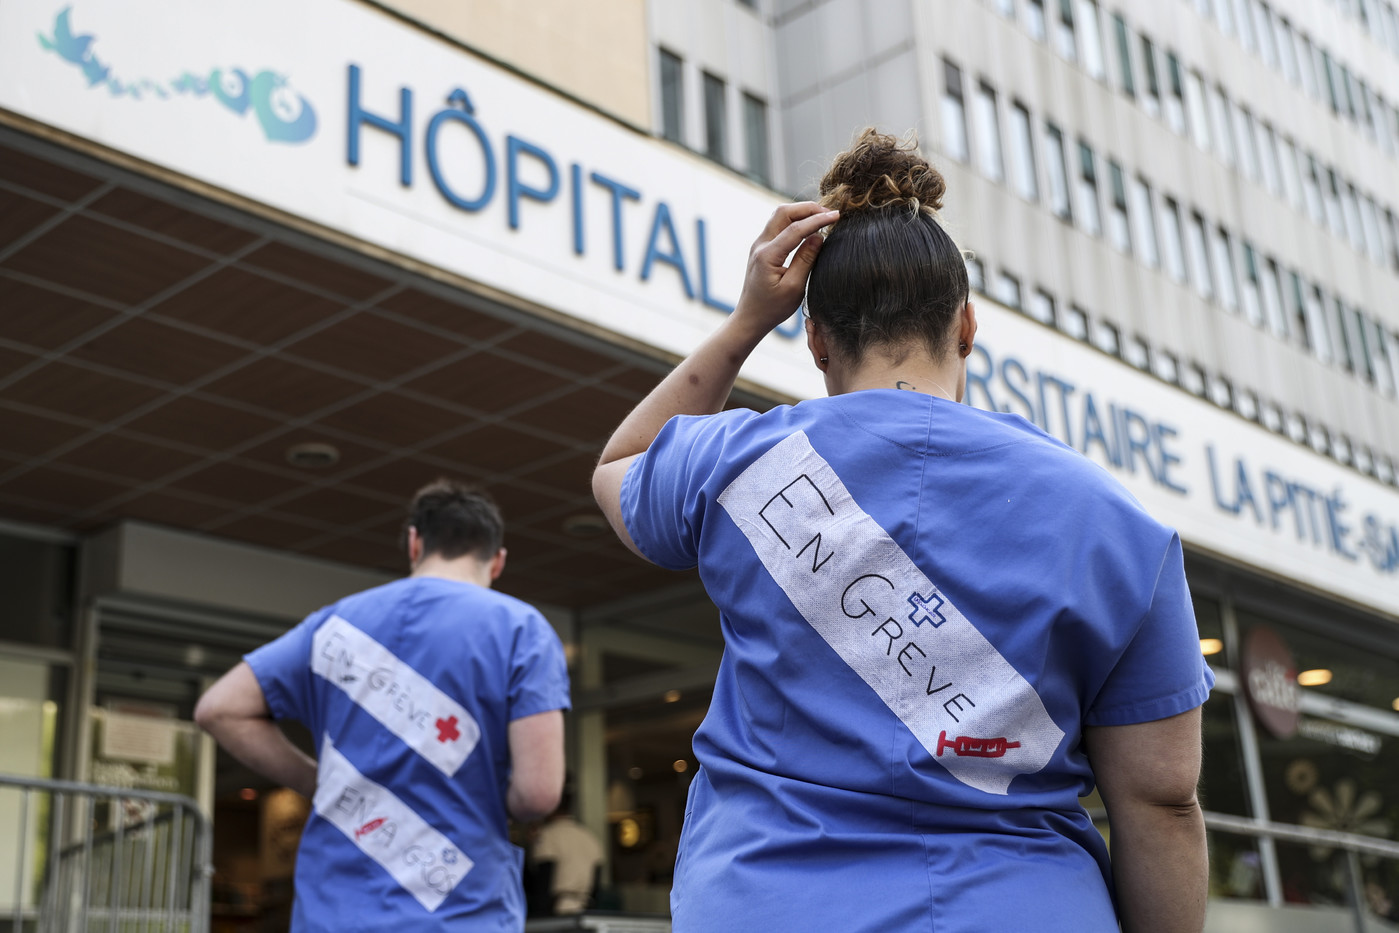 Hôpitaux de Paris: les urgences toujours mobilisées, avant une grève plus large